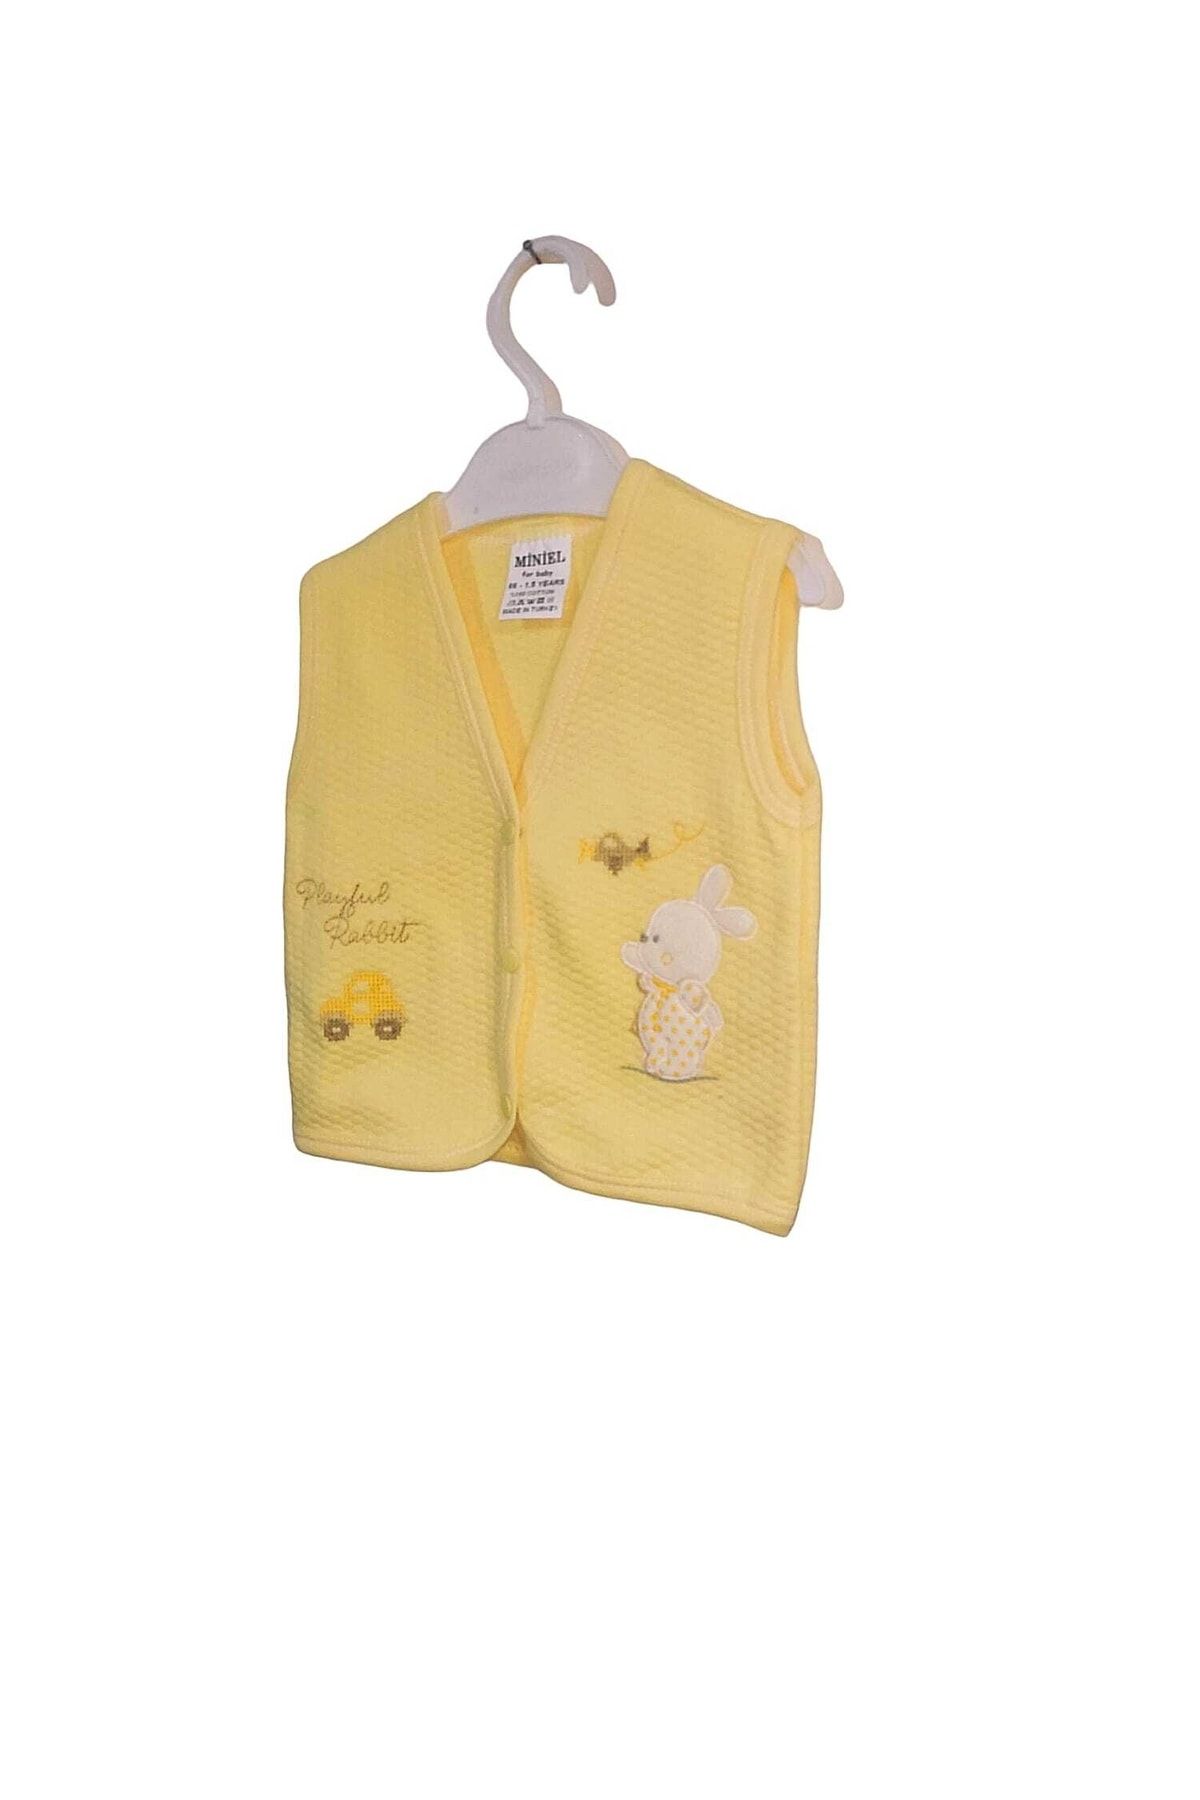 Minikel Miniel Desenli Sarı Bebek Yelek Kolsuz %100 Pamuk